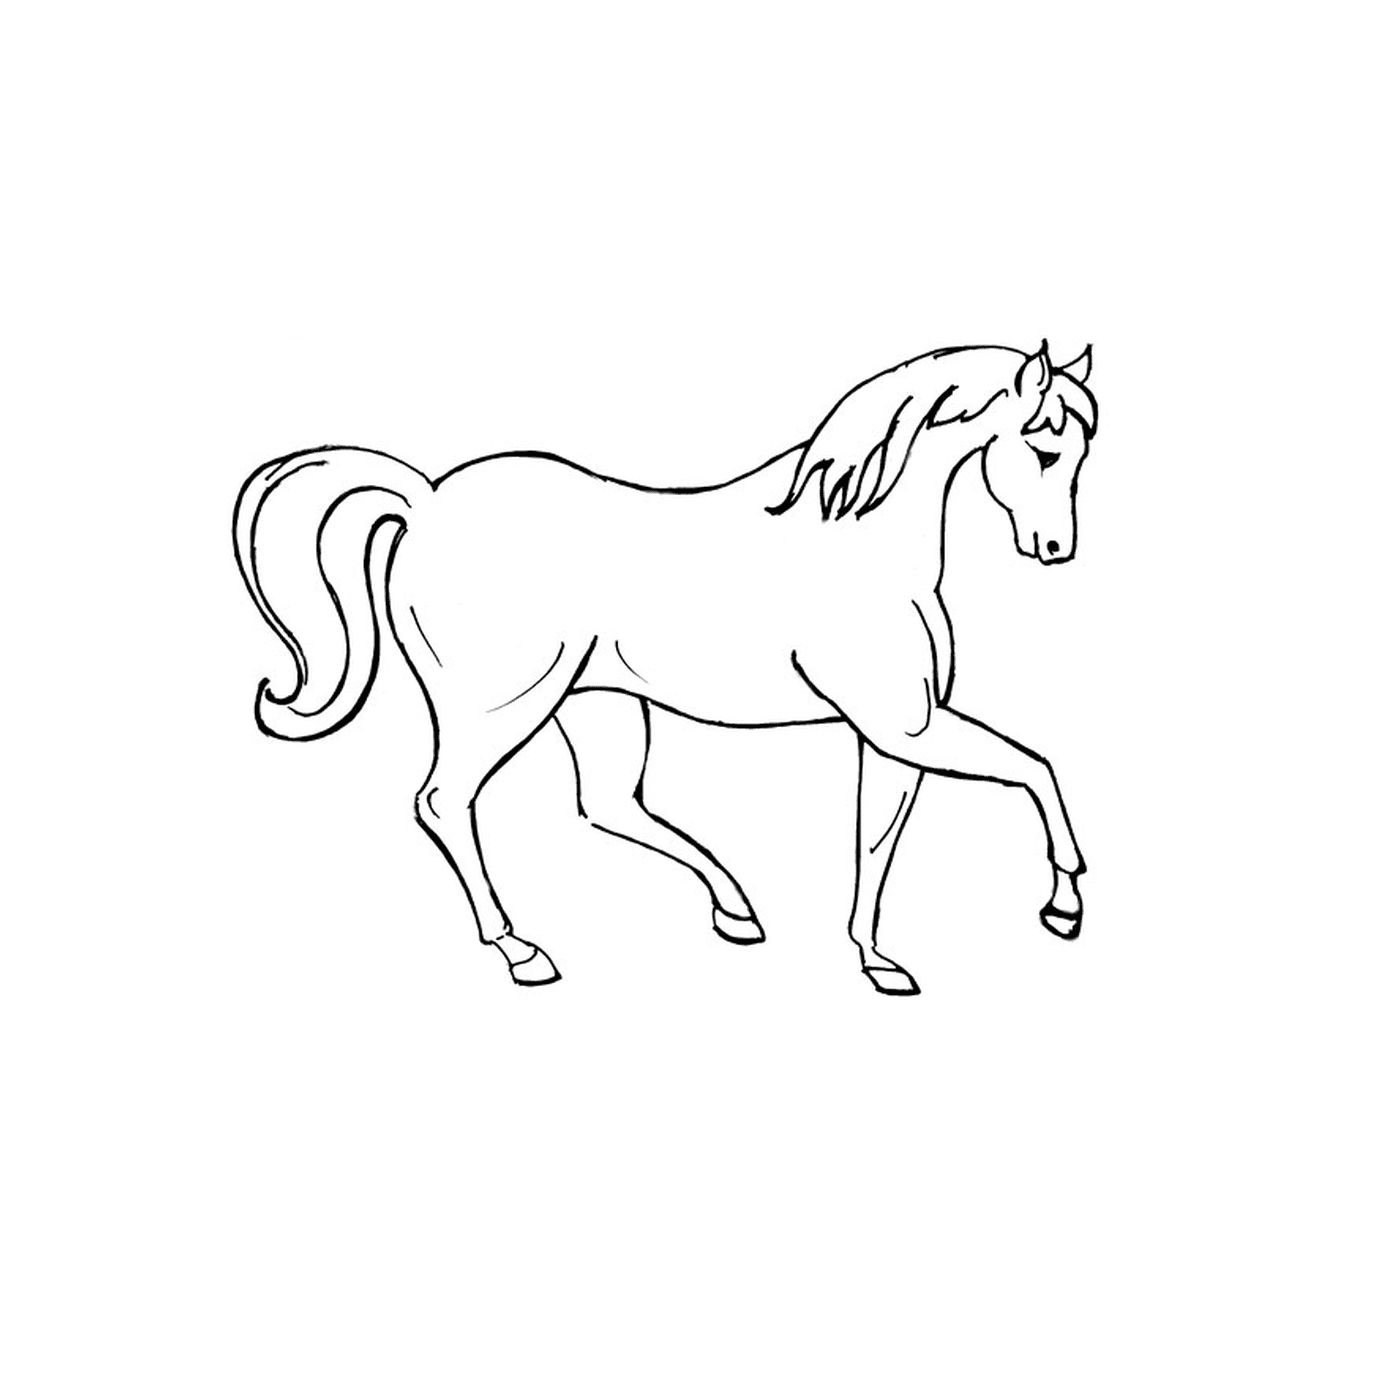  Caballo Brac - Un caballo blanco con el pelo largo 